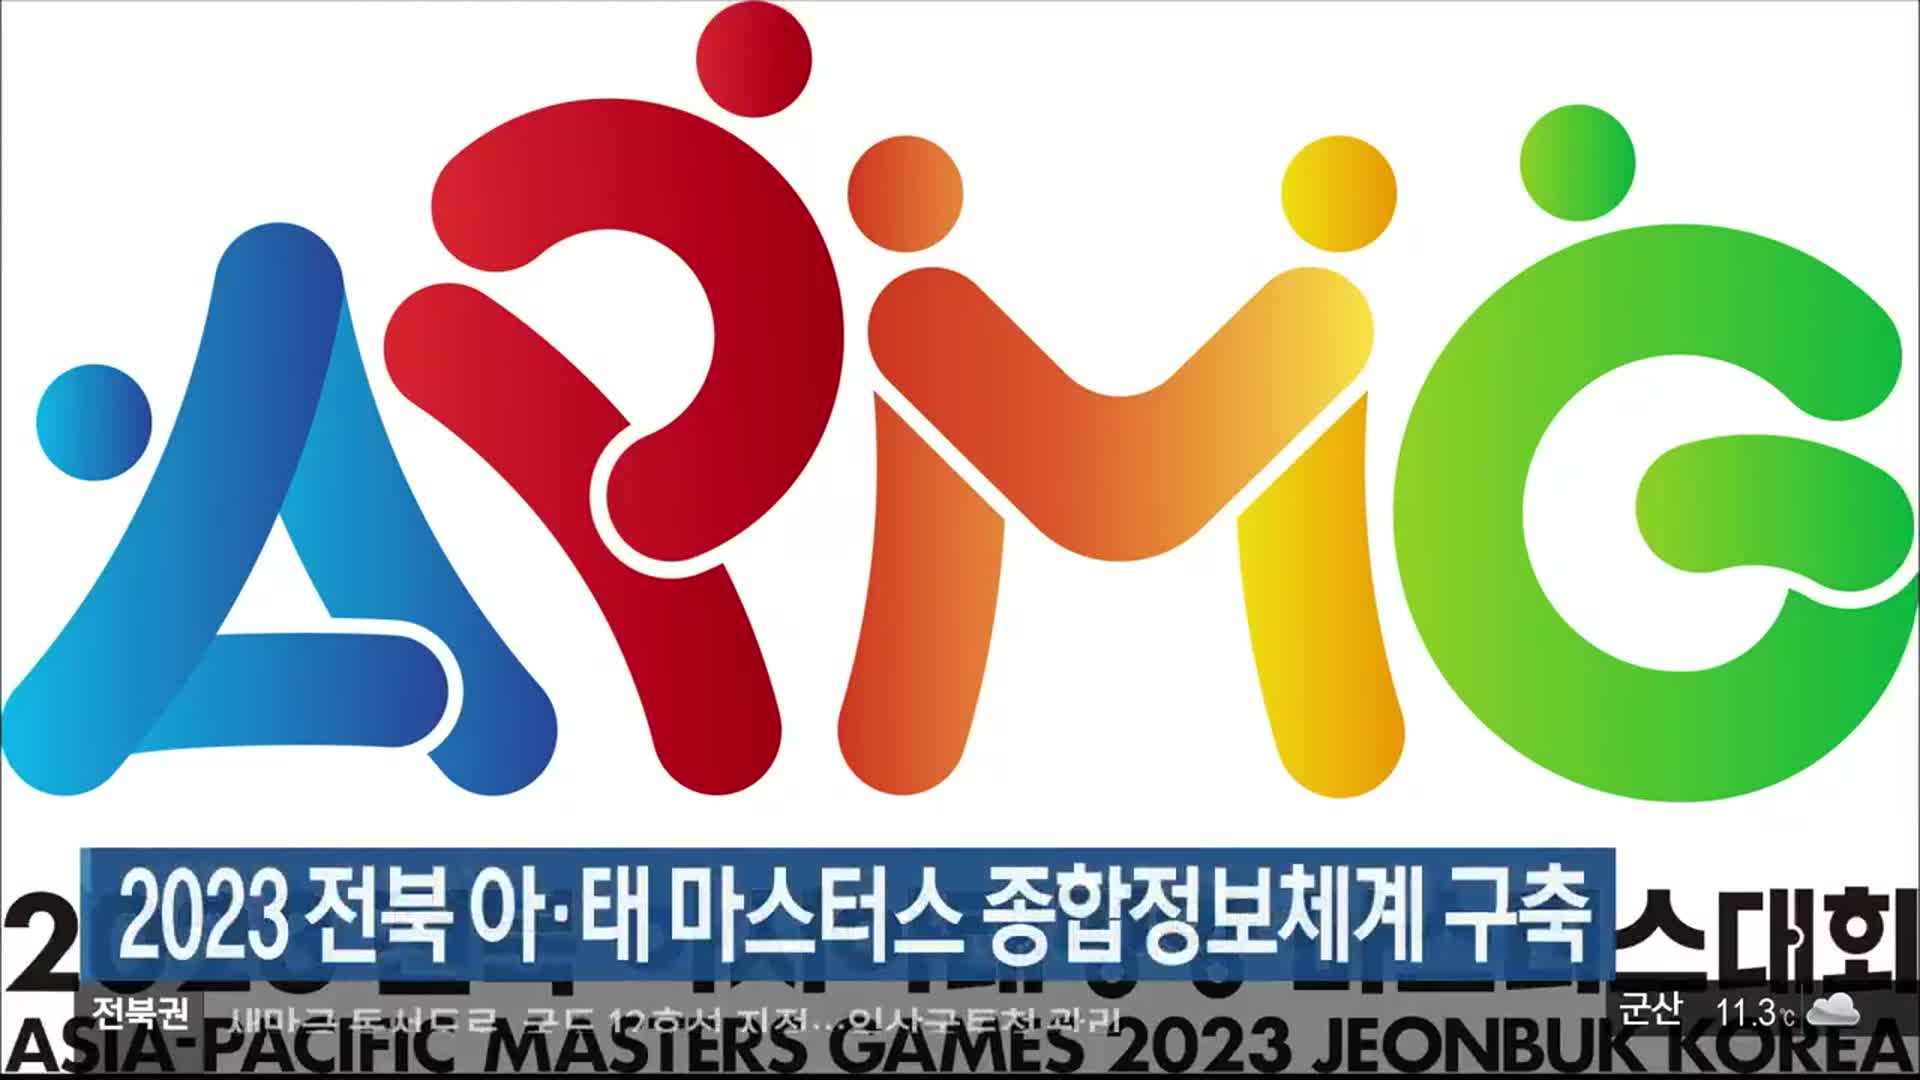 2023 전북 아·태 마스터스 종합정보체계 구축